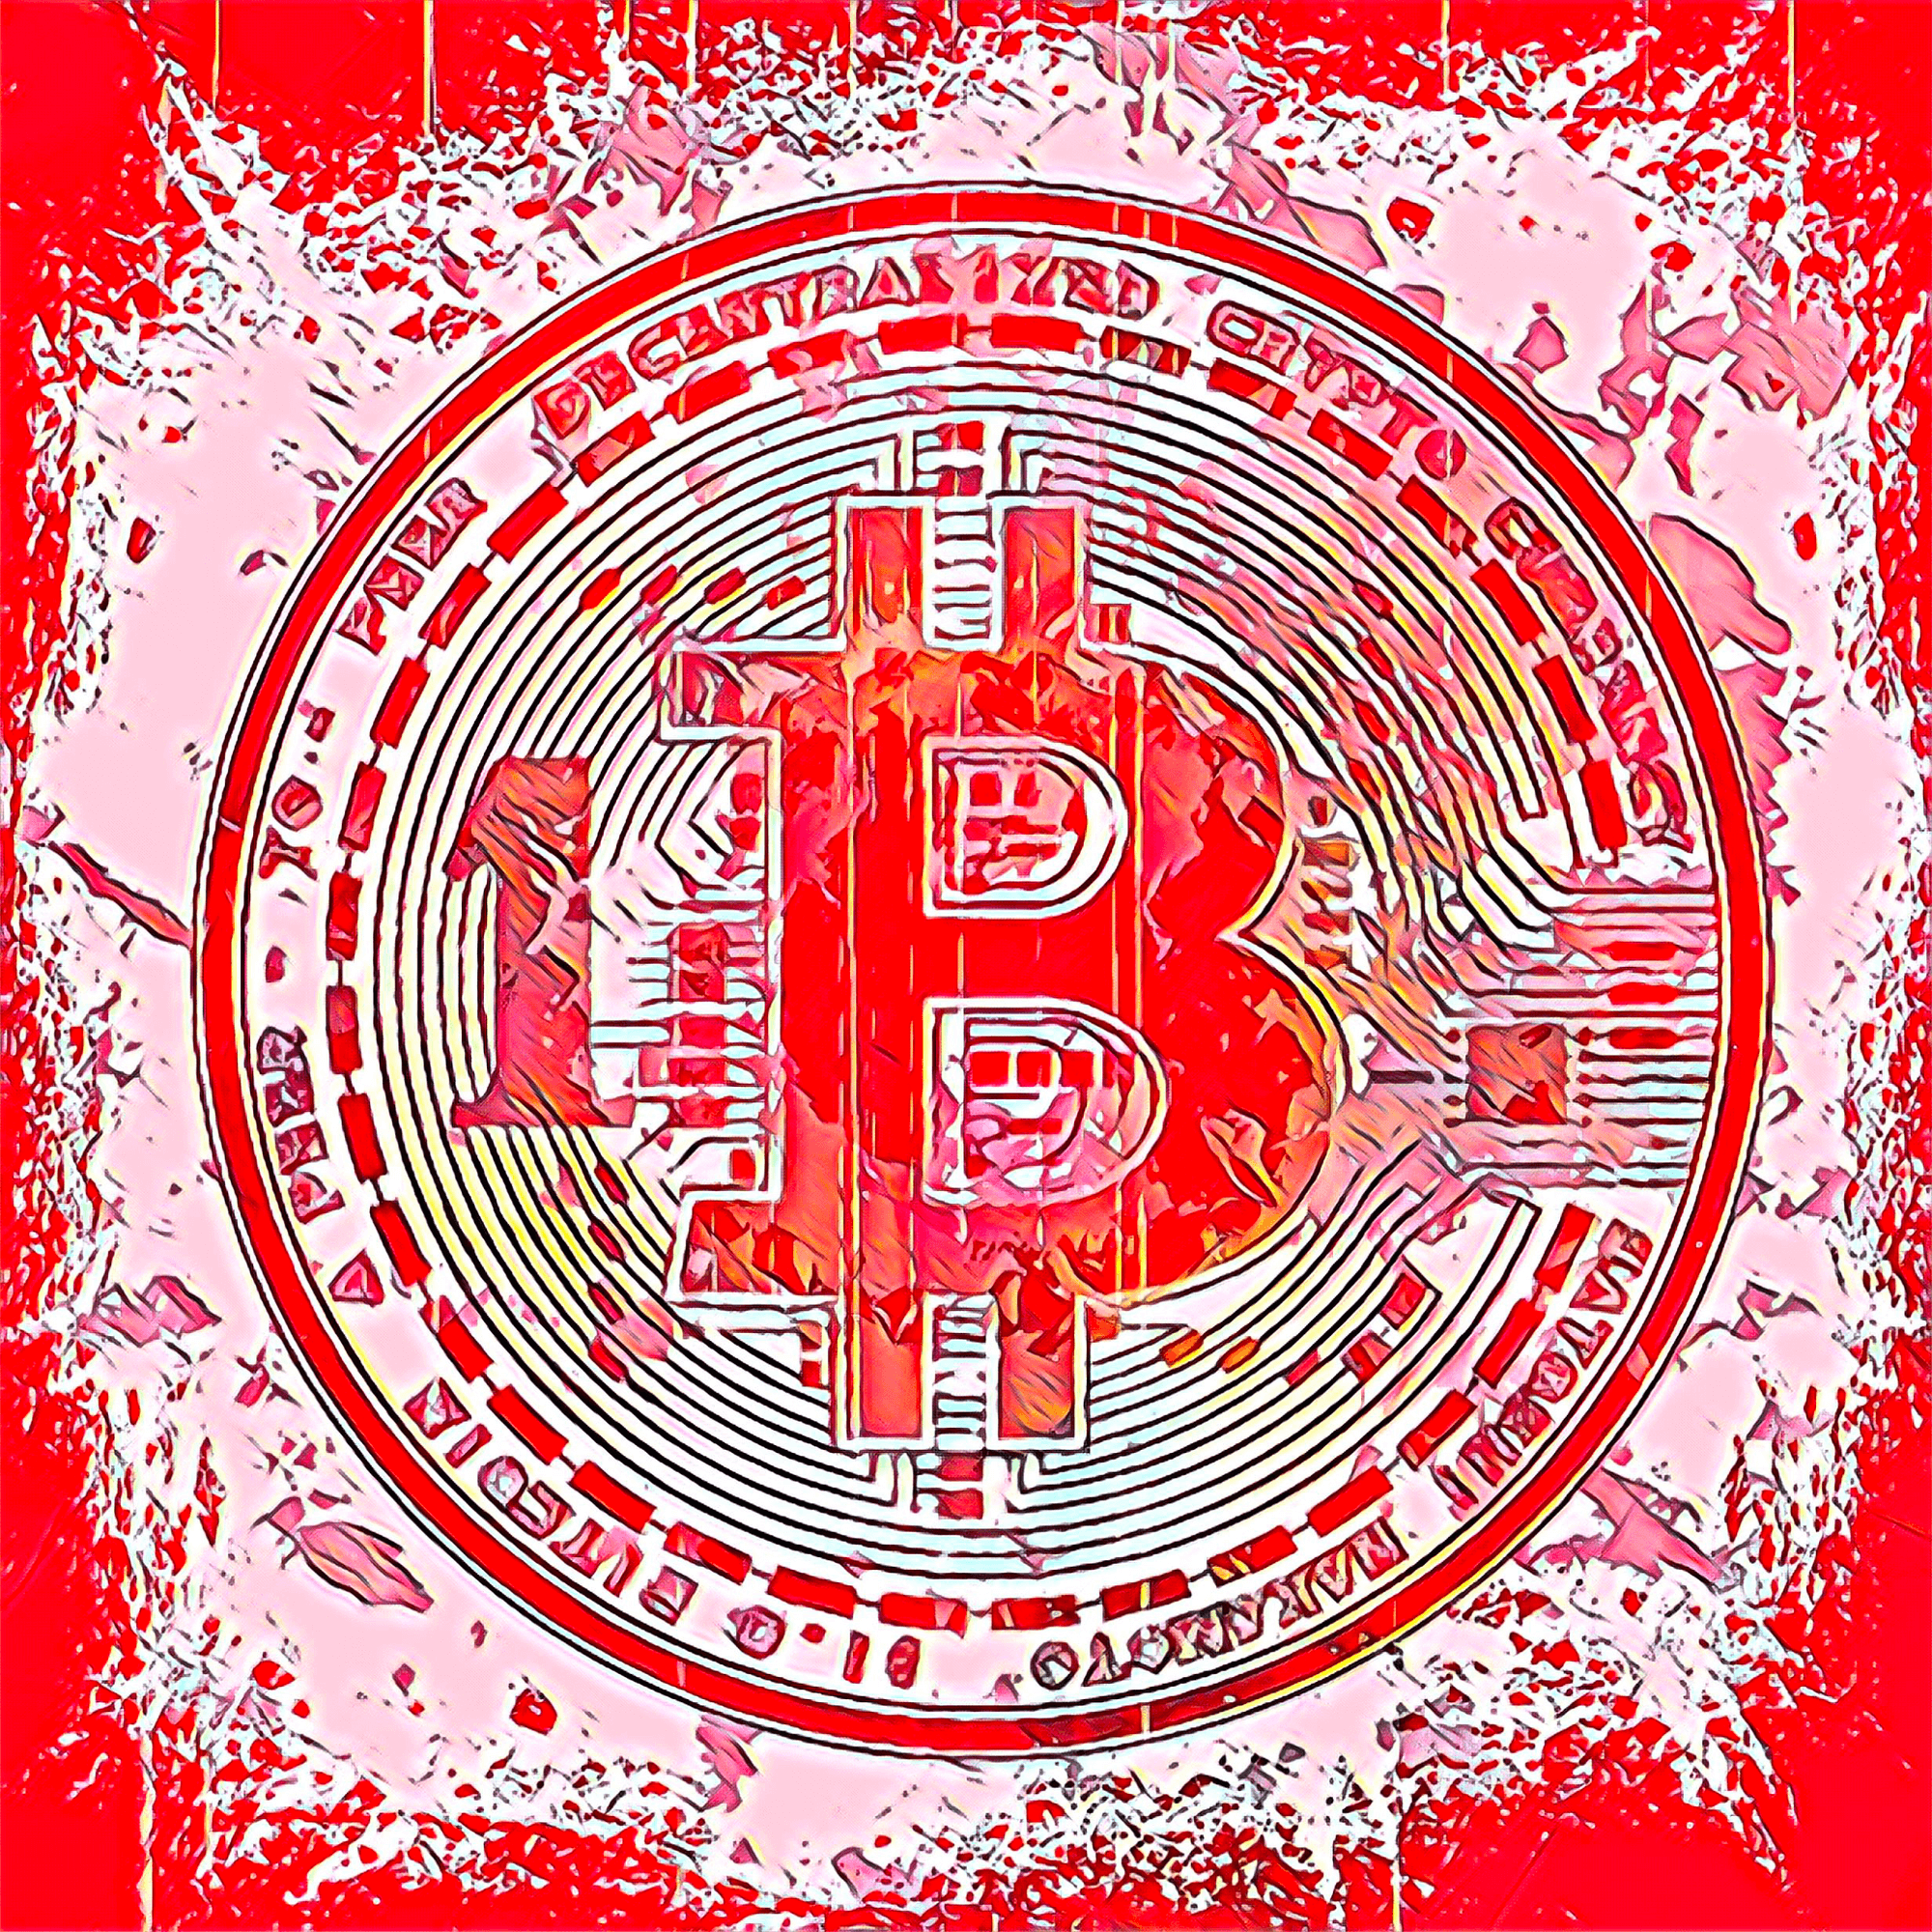 Bitcoin #169 - |